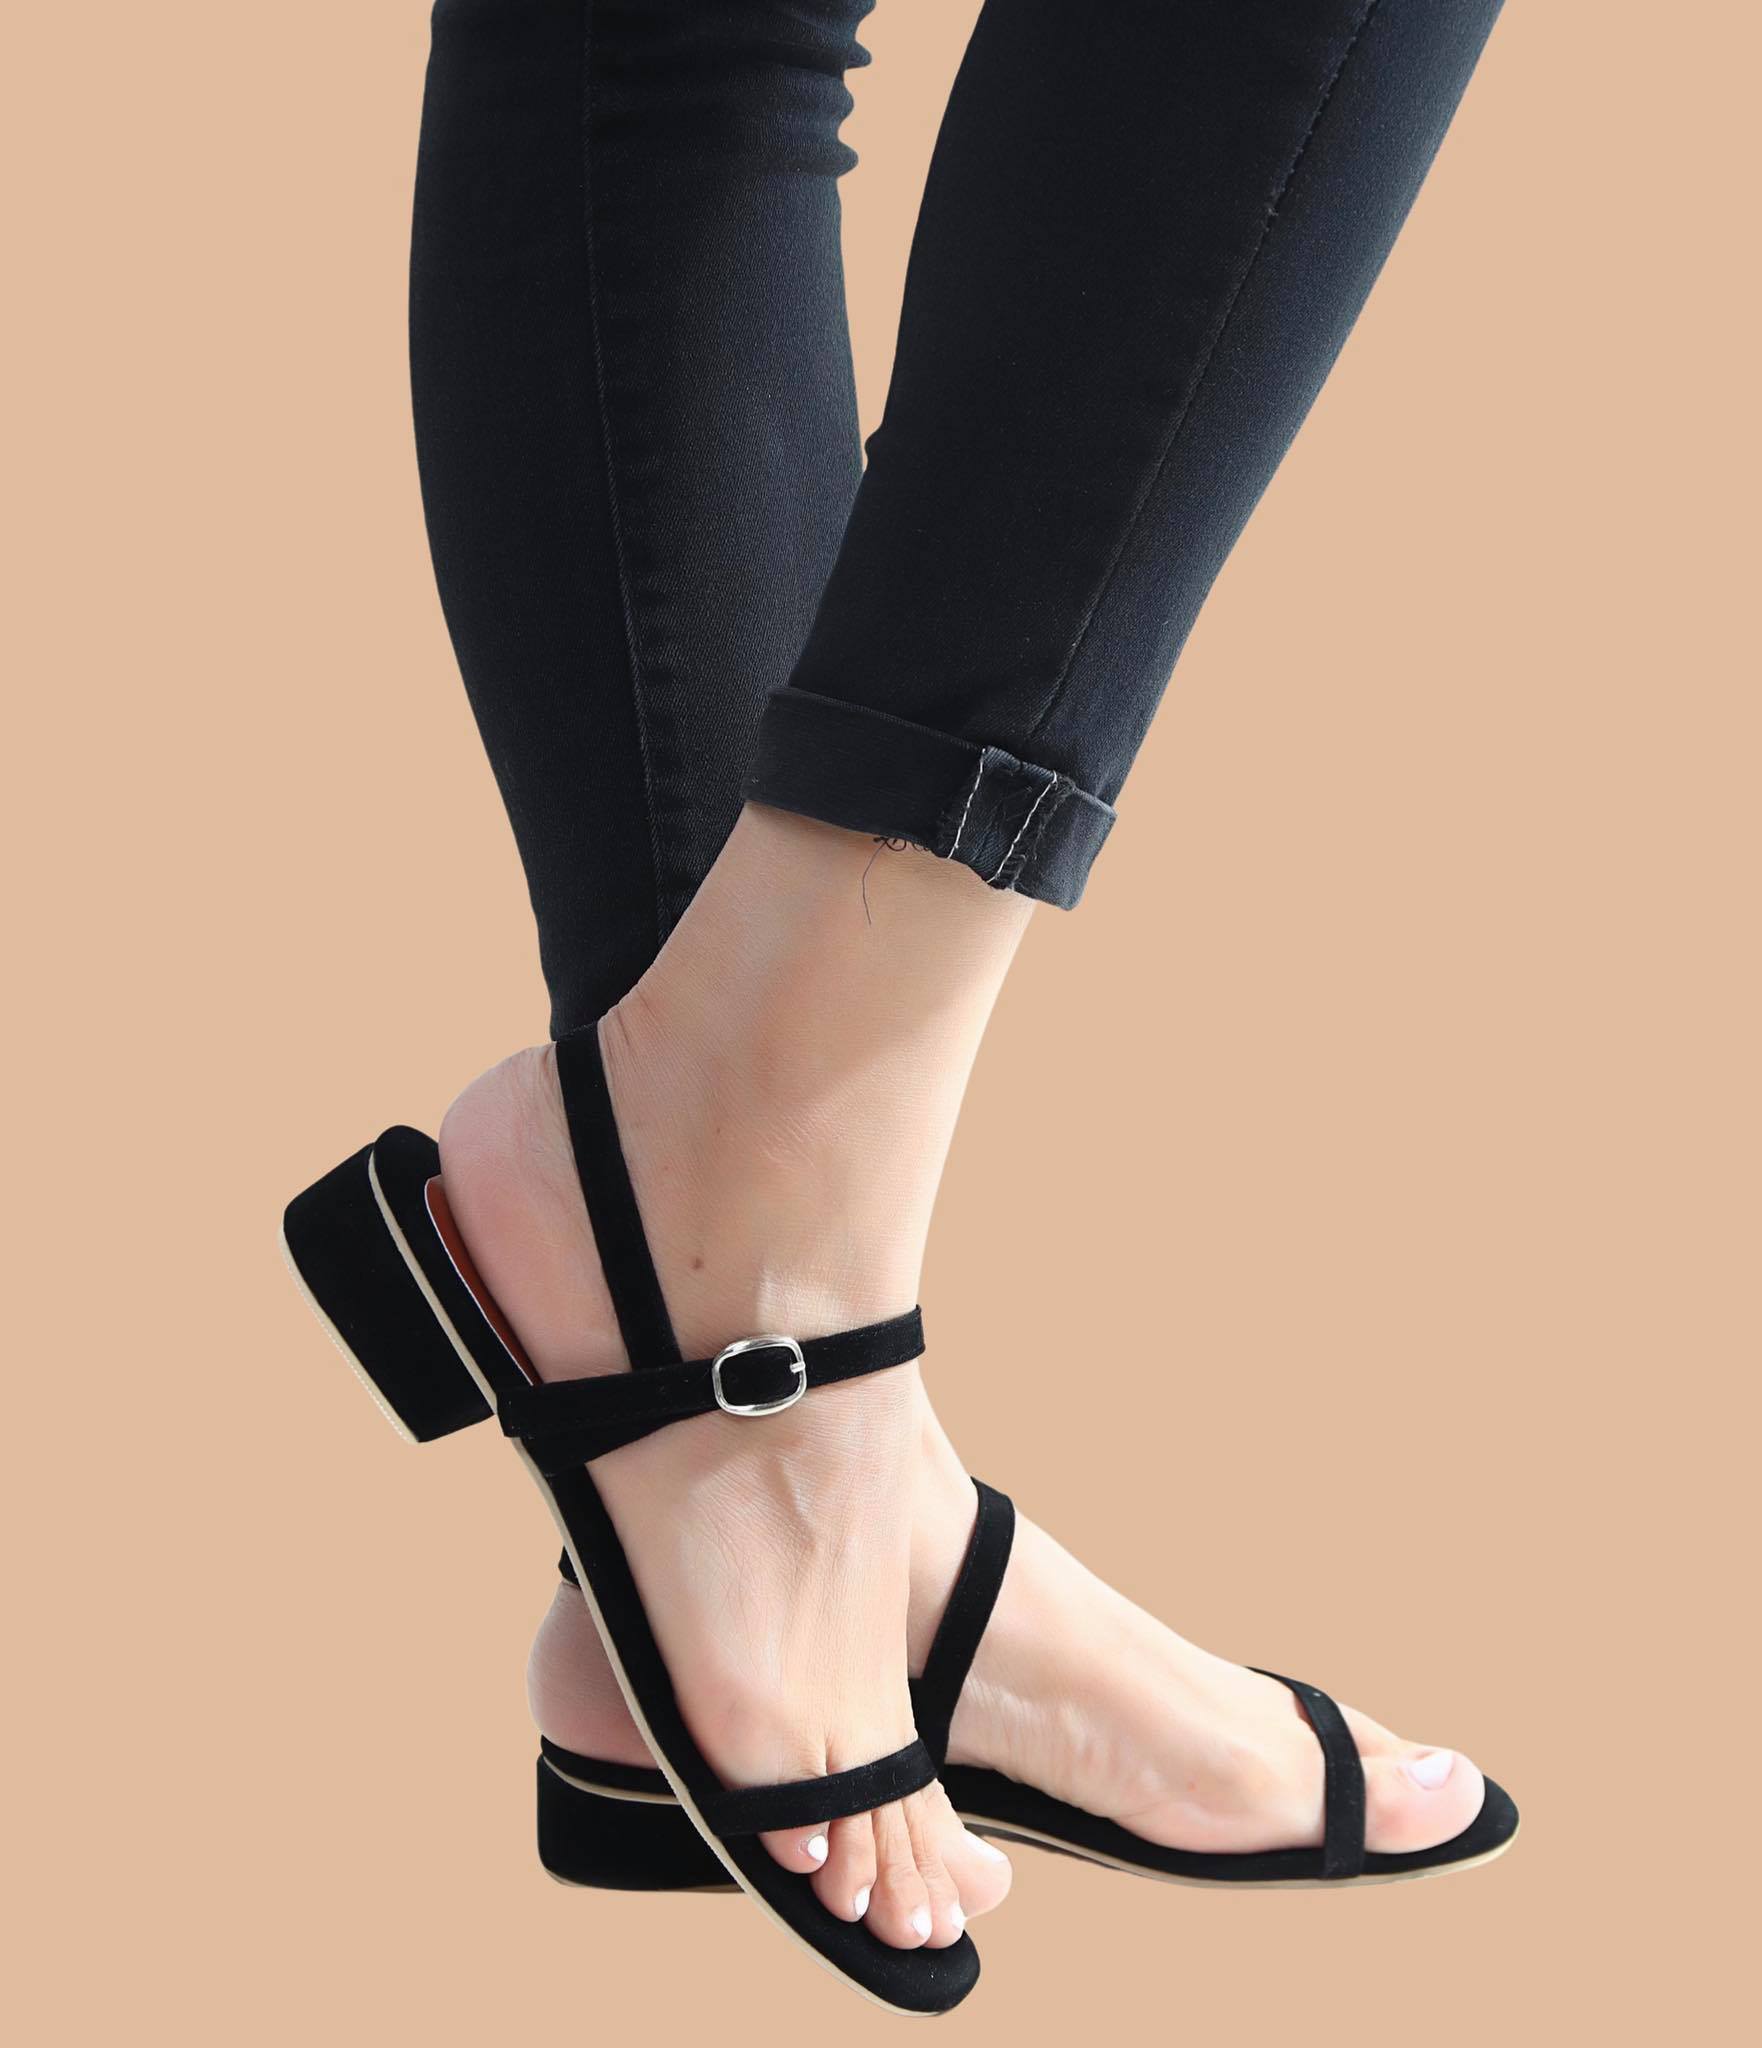 1 inch heel black shoes, Women's Fashion, Footwear, Heels on Carousell-hkpdtq2012.edu.vn